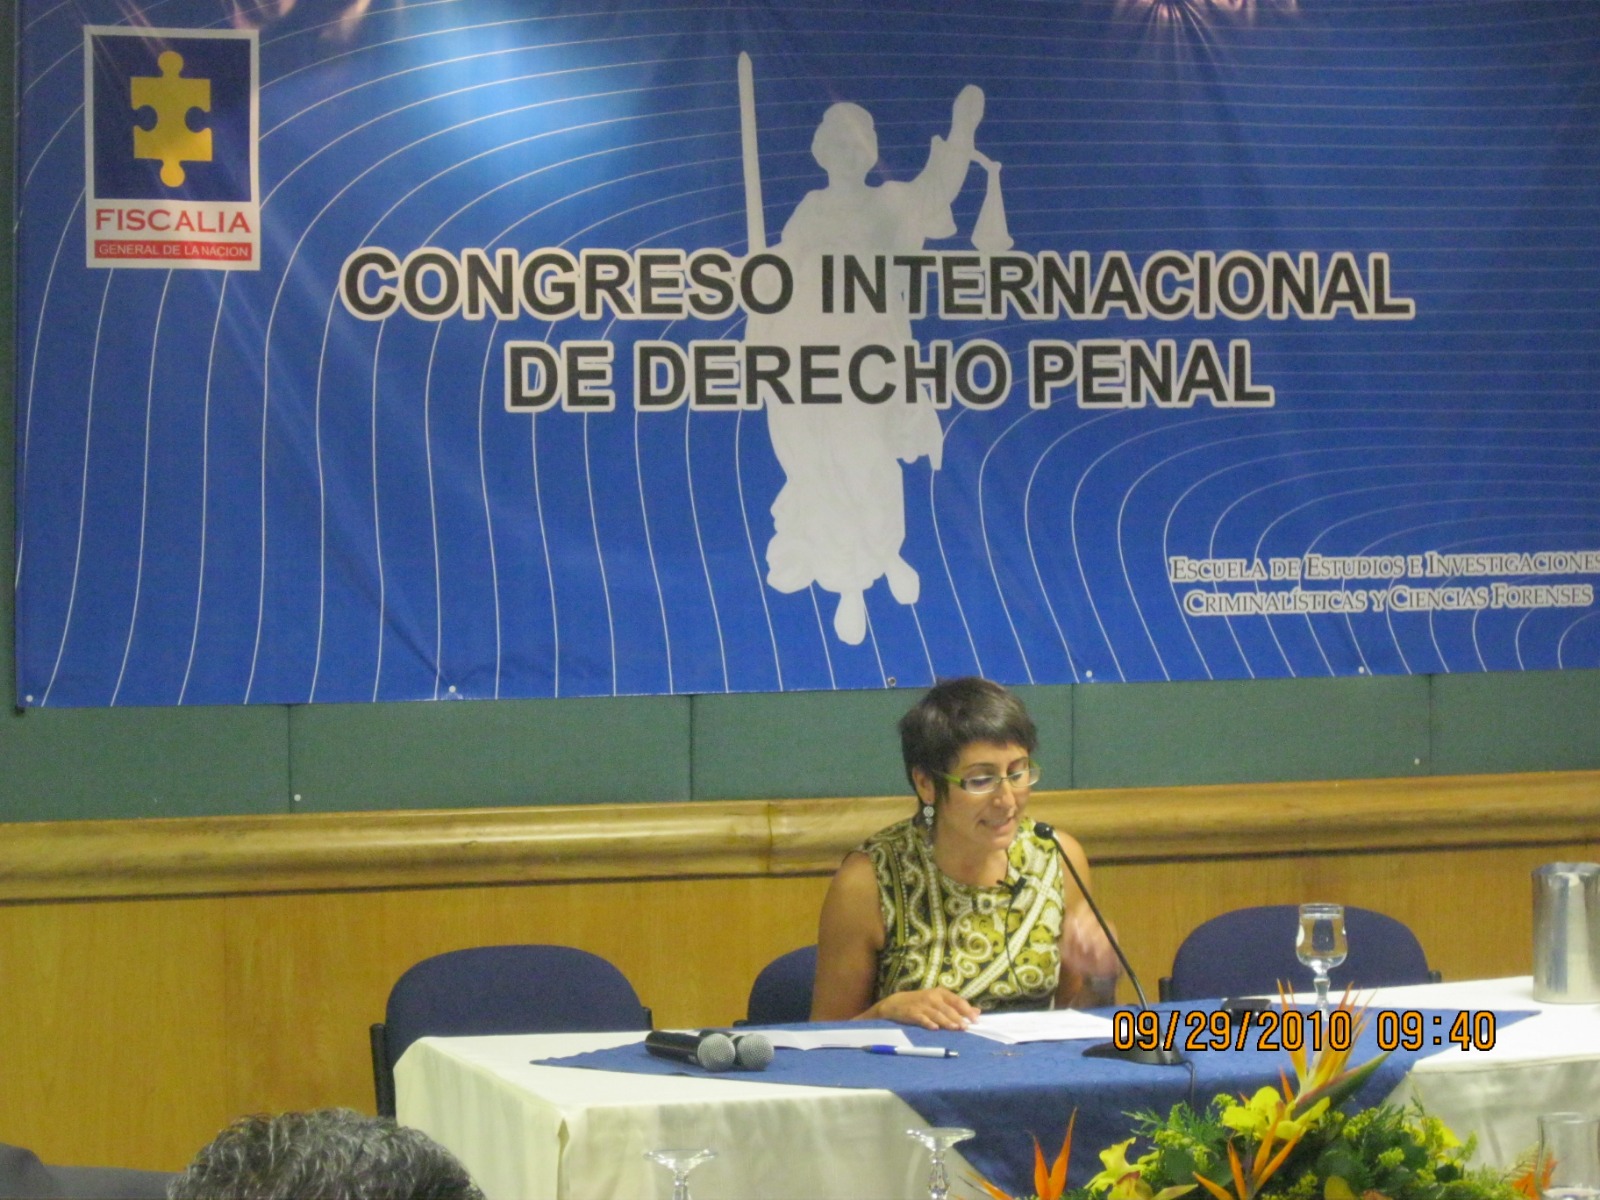 La Prof. Roso en el Congreso internacional de DP de la Fiscalía Gral. en Bogotá